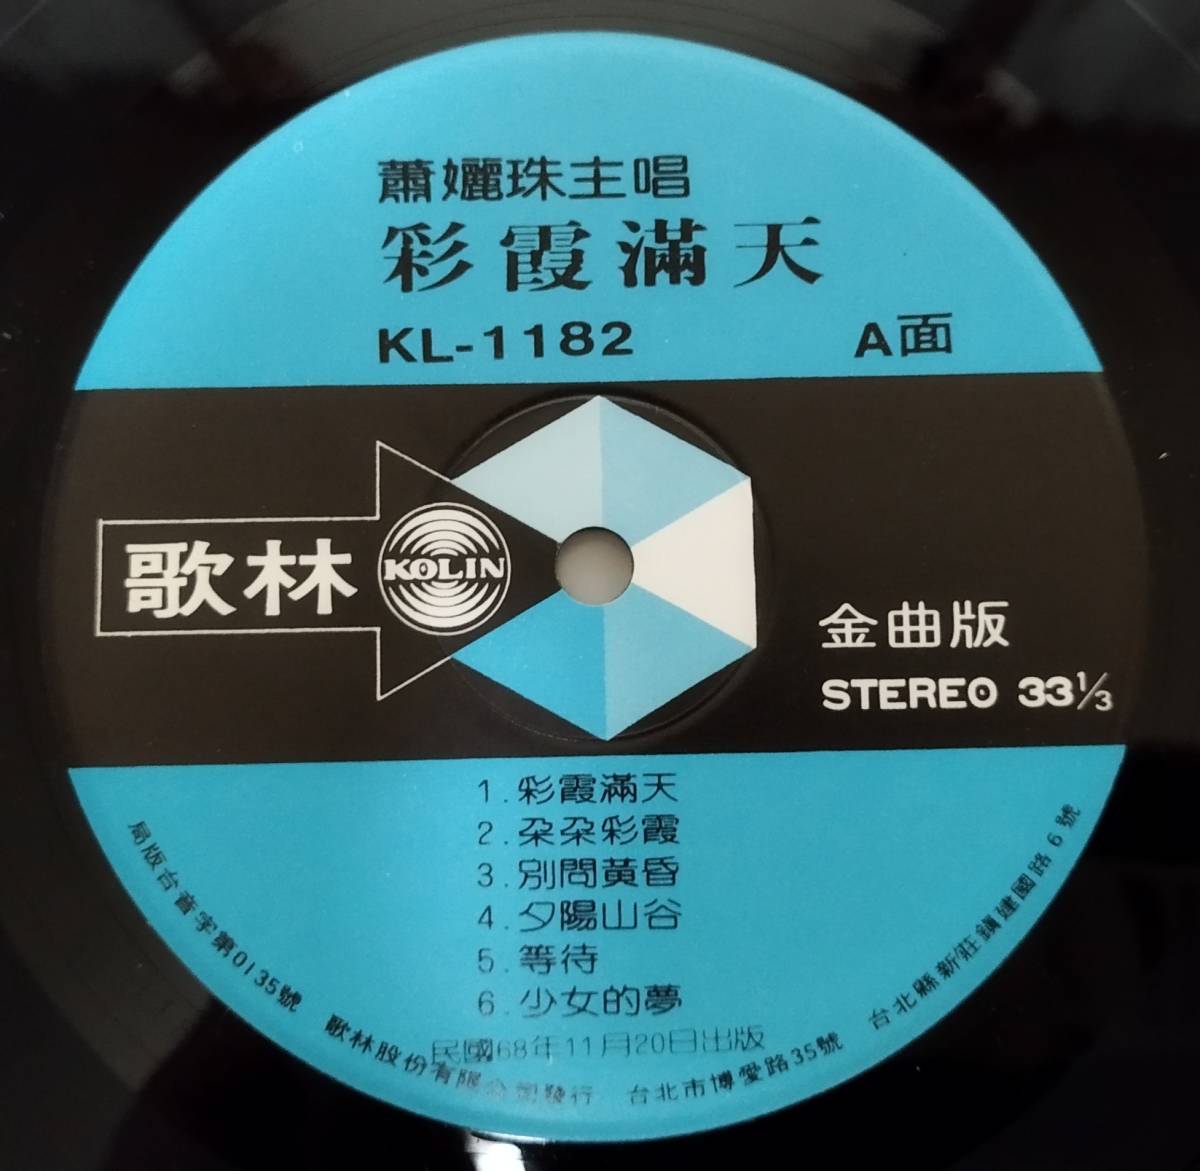 貴重「 蕭 女麗 珠 彩霞滿天 」台湾盤レコード 歌林唱片 KL-1182 中華ポップス 79年盤の画像3